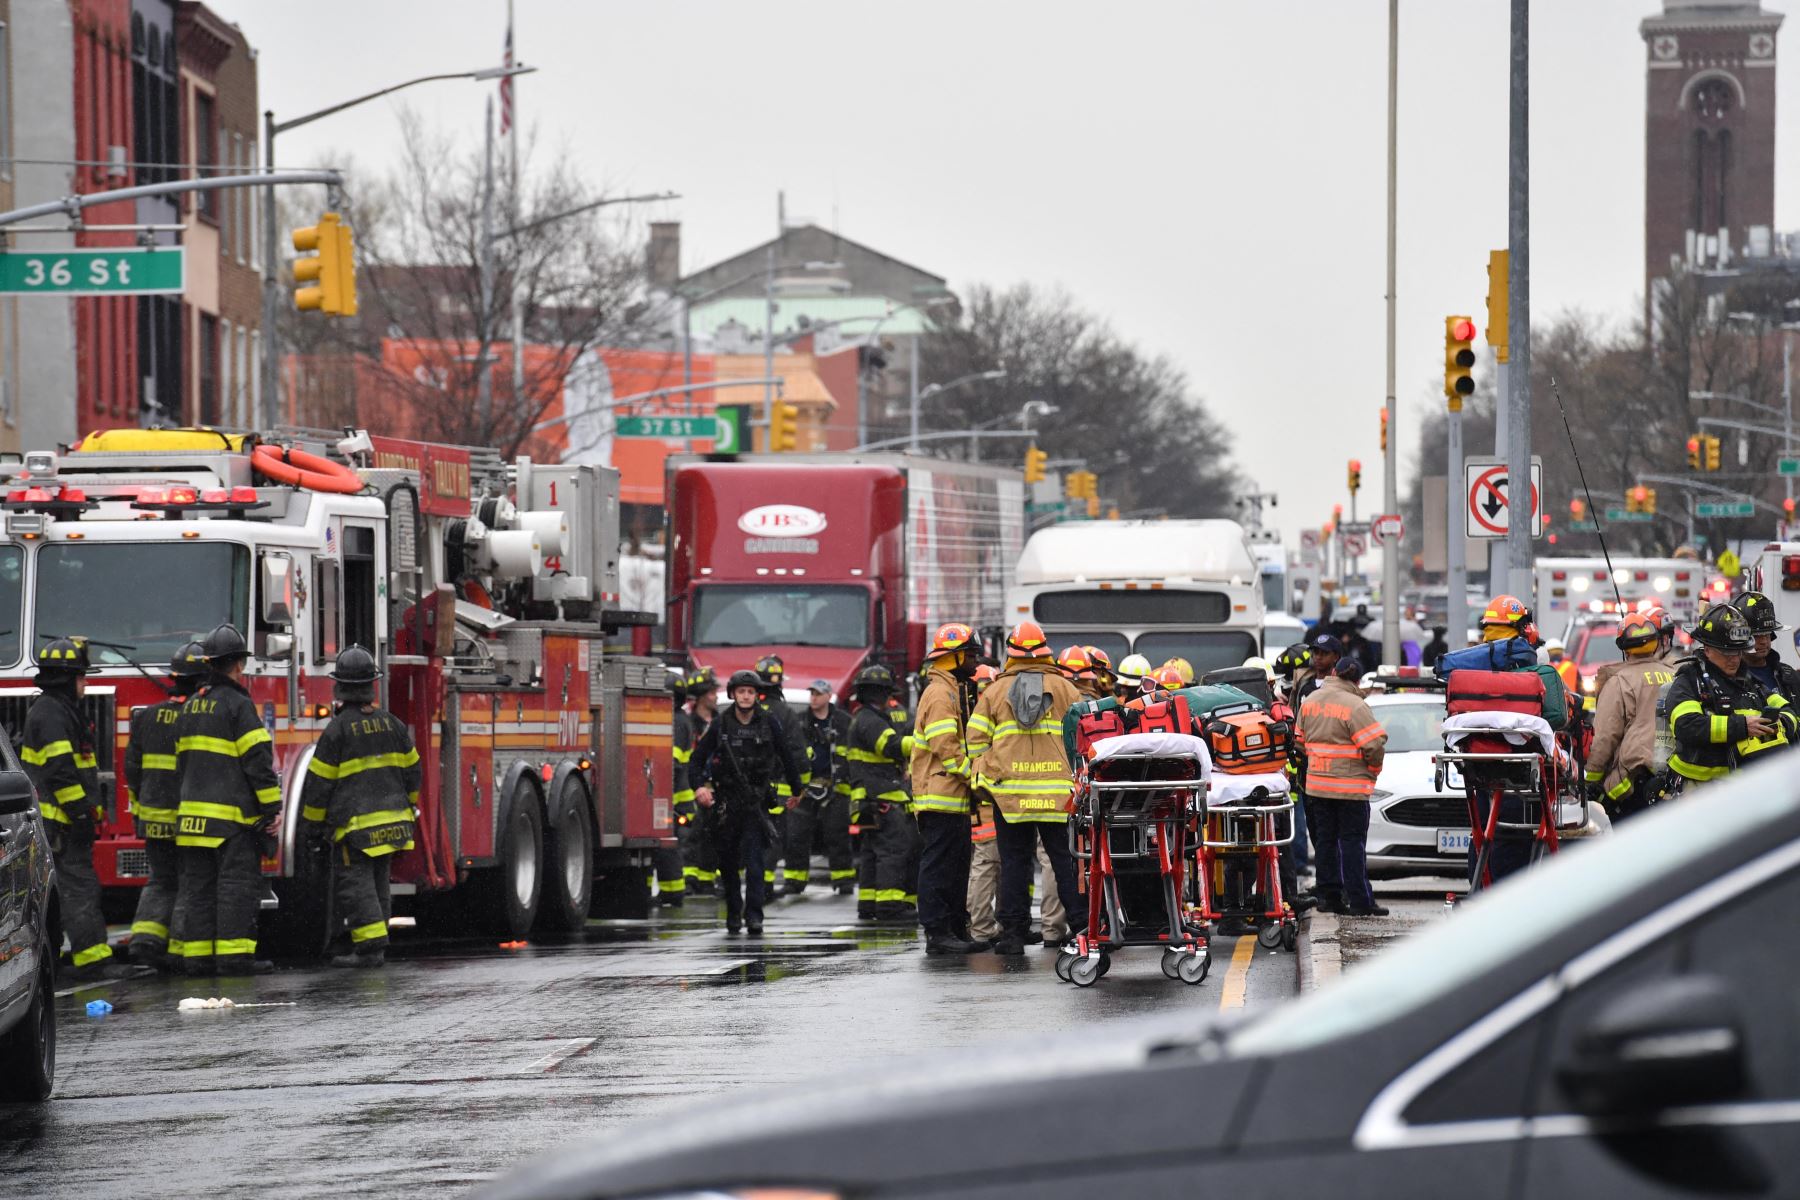 Policía y servicios de emergencia se reúnen en el lugar de un tiroteo reportado de varias personas fuera de la estación de metro 36 St el 12 de abril de 2022 en el distrito de Brooklyn de la ciudad de Nueva York. Foto: AFP